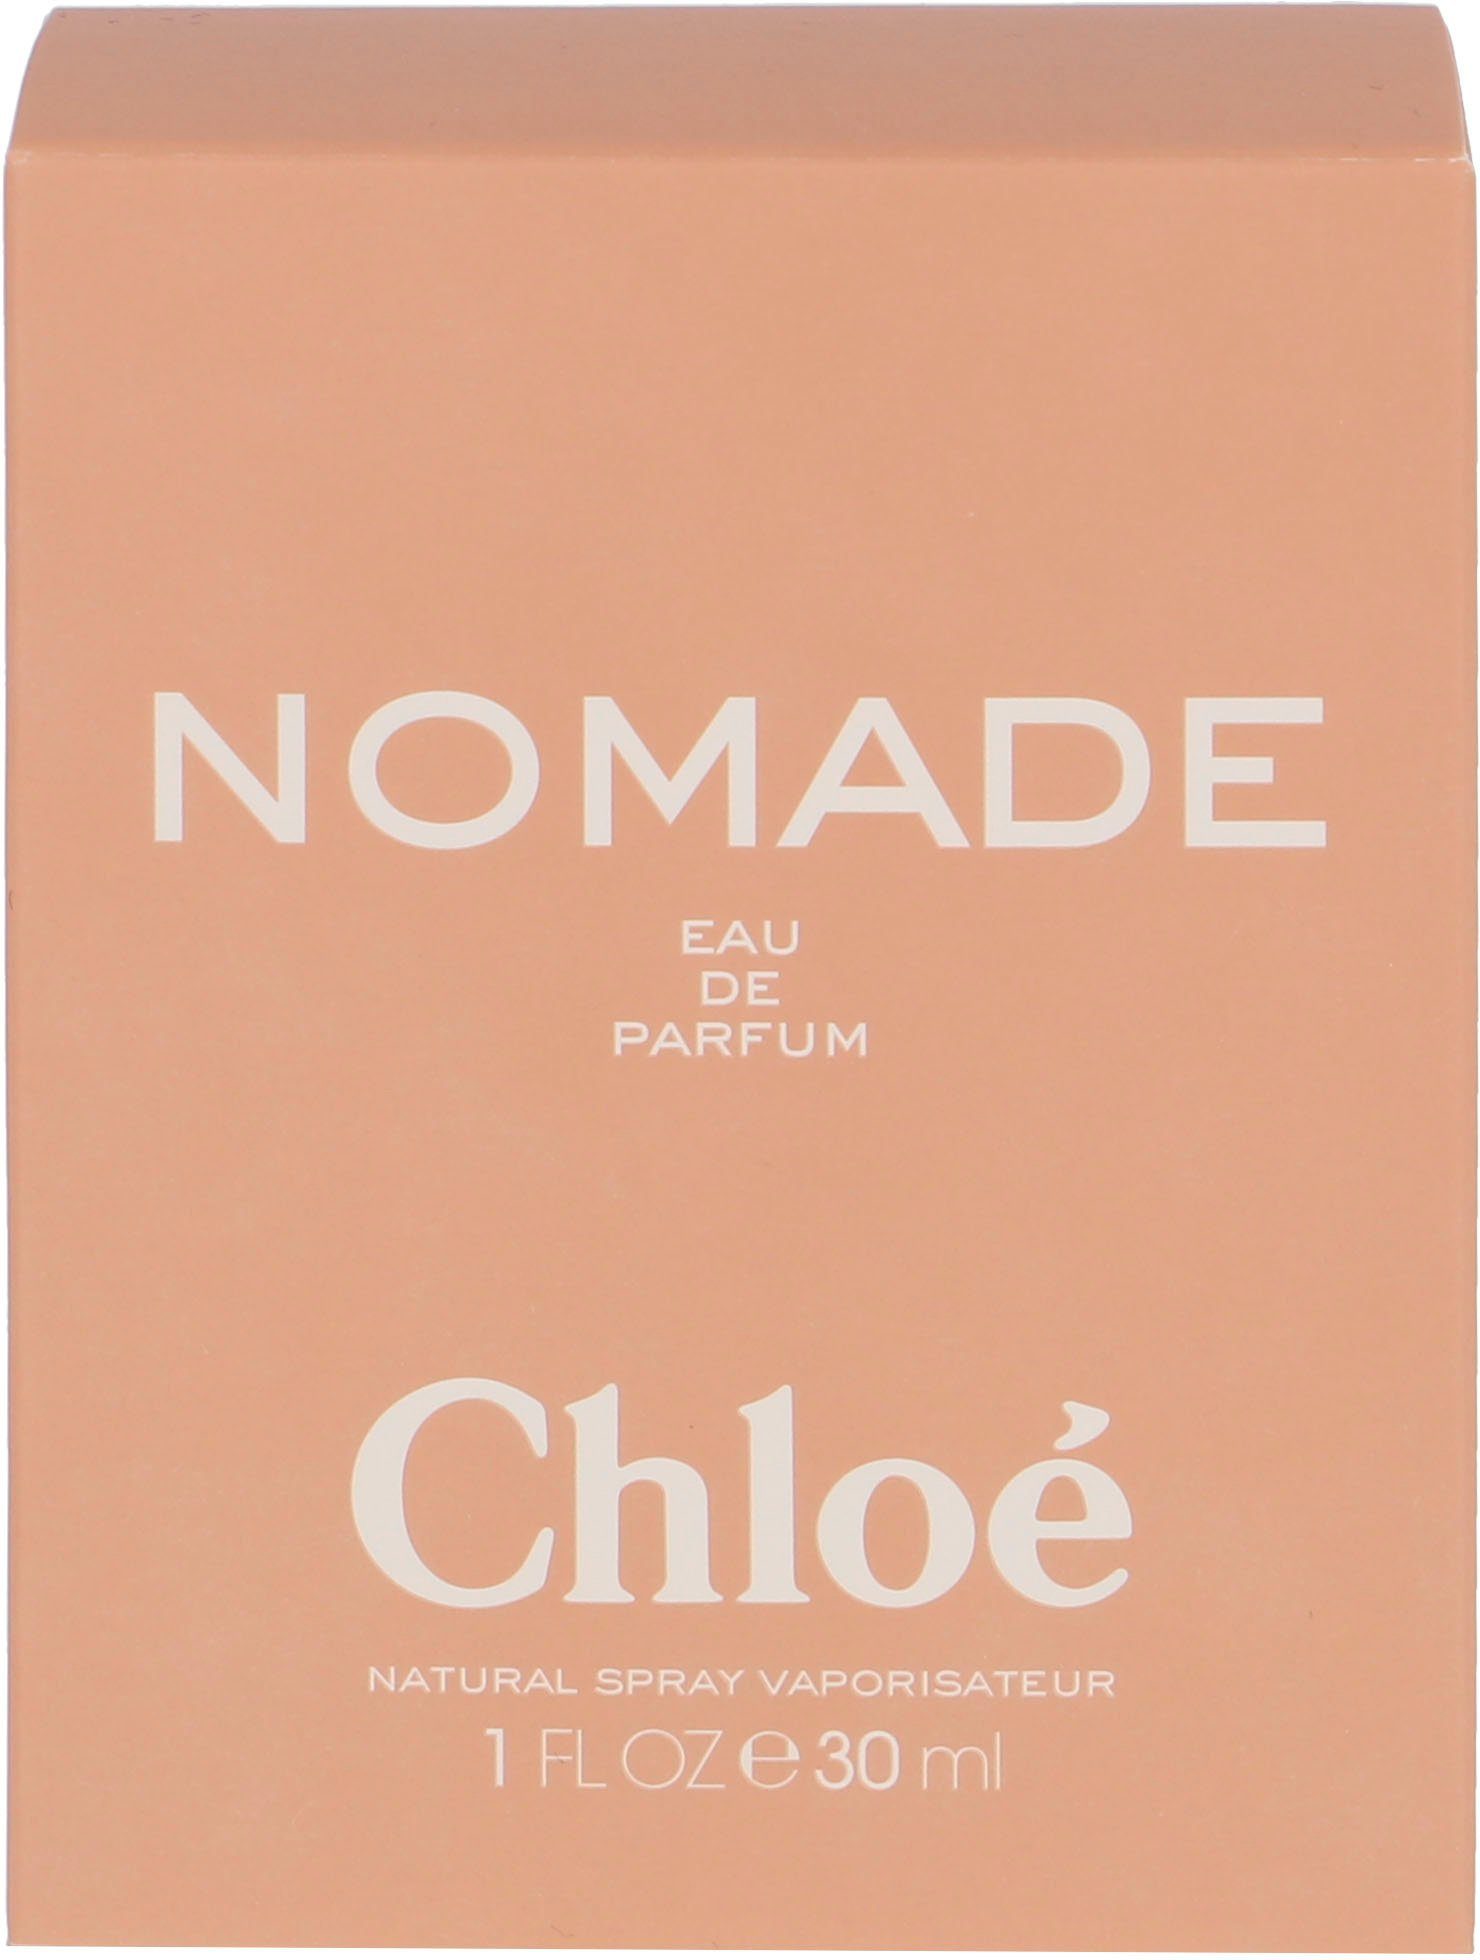 Chloé Eau Nomade de Parfum